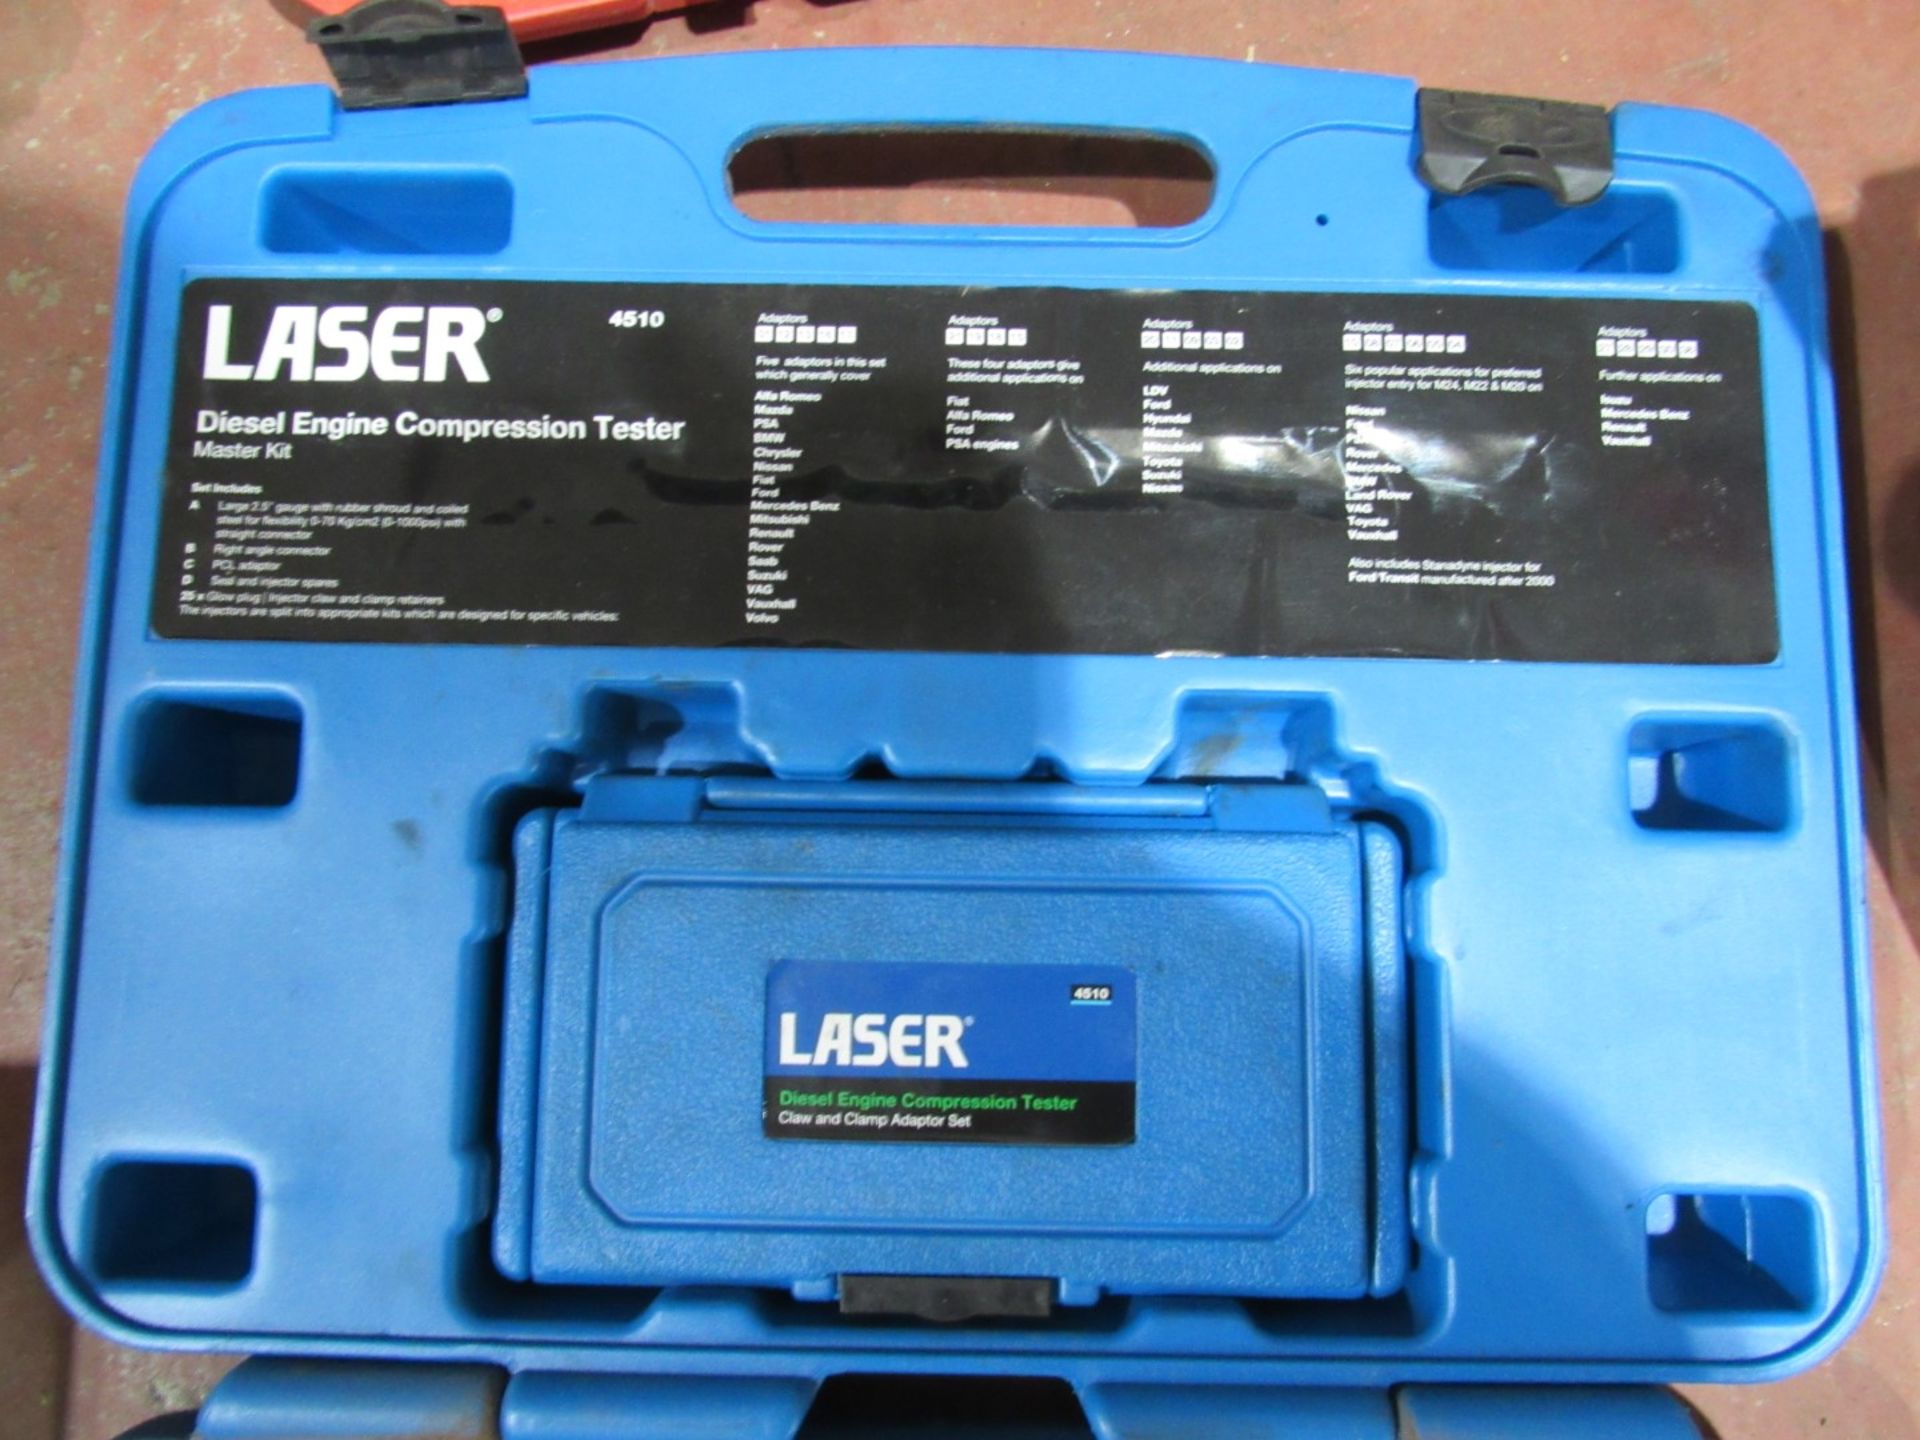 Laser 4510 Diesel engine compression tester - Image 2 of 4